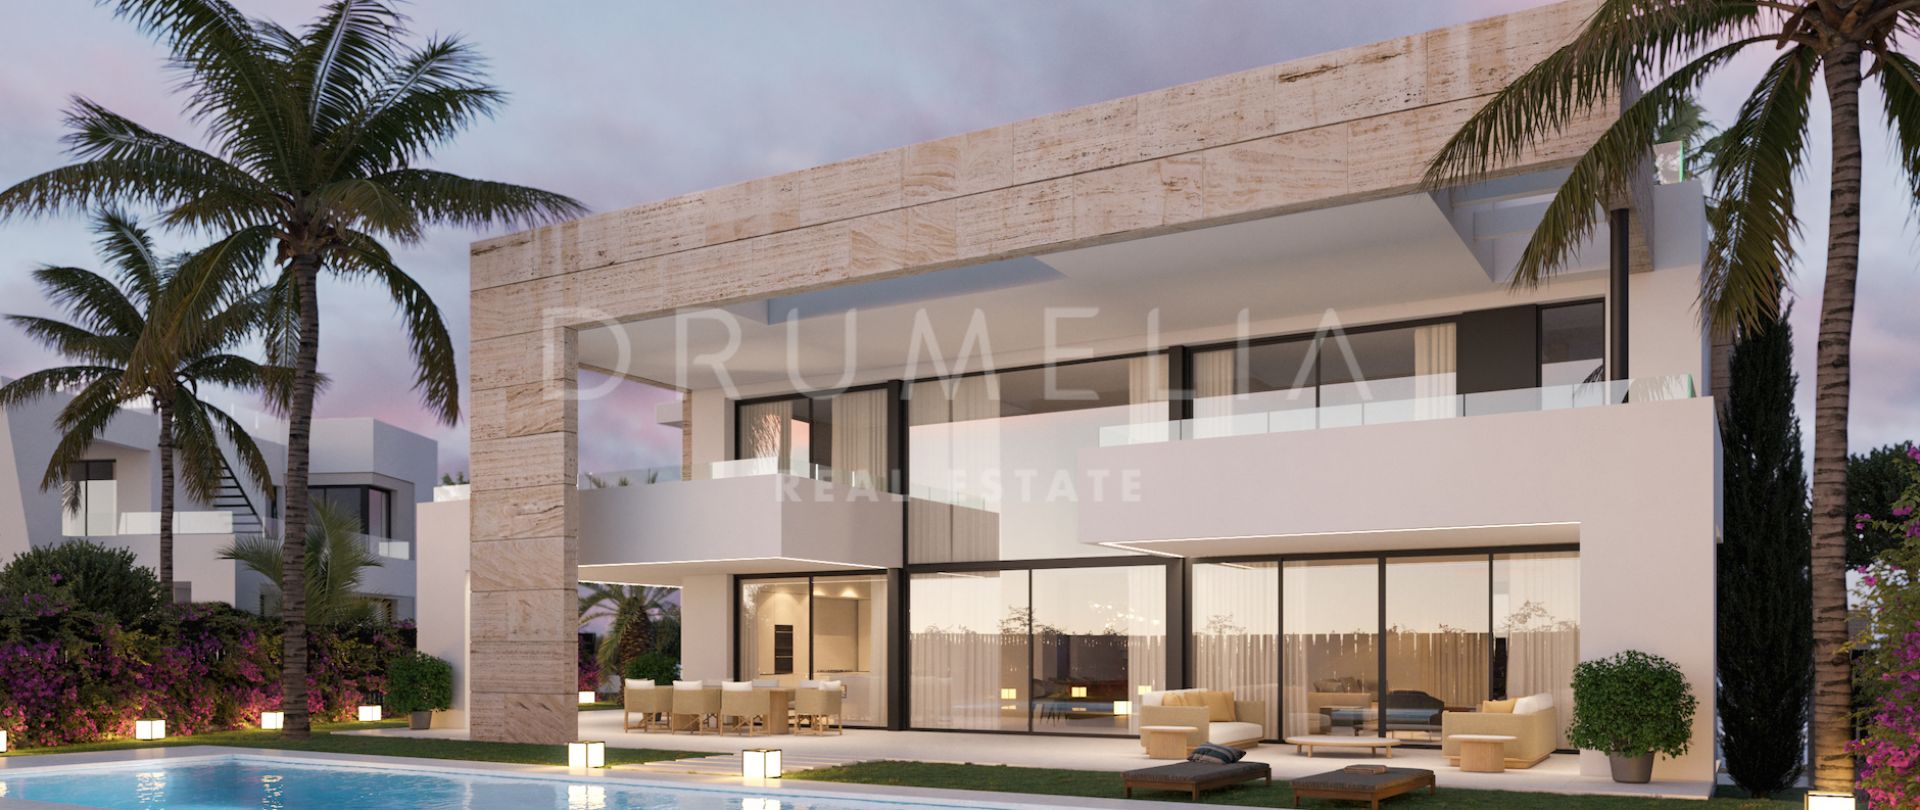 Schitterend project van gloednieuwe moderne villa in Lomas del Virrey, de Golden Mile van Marbella